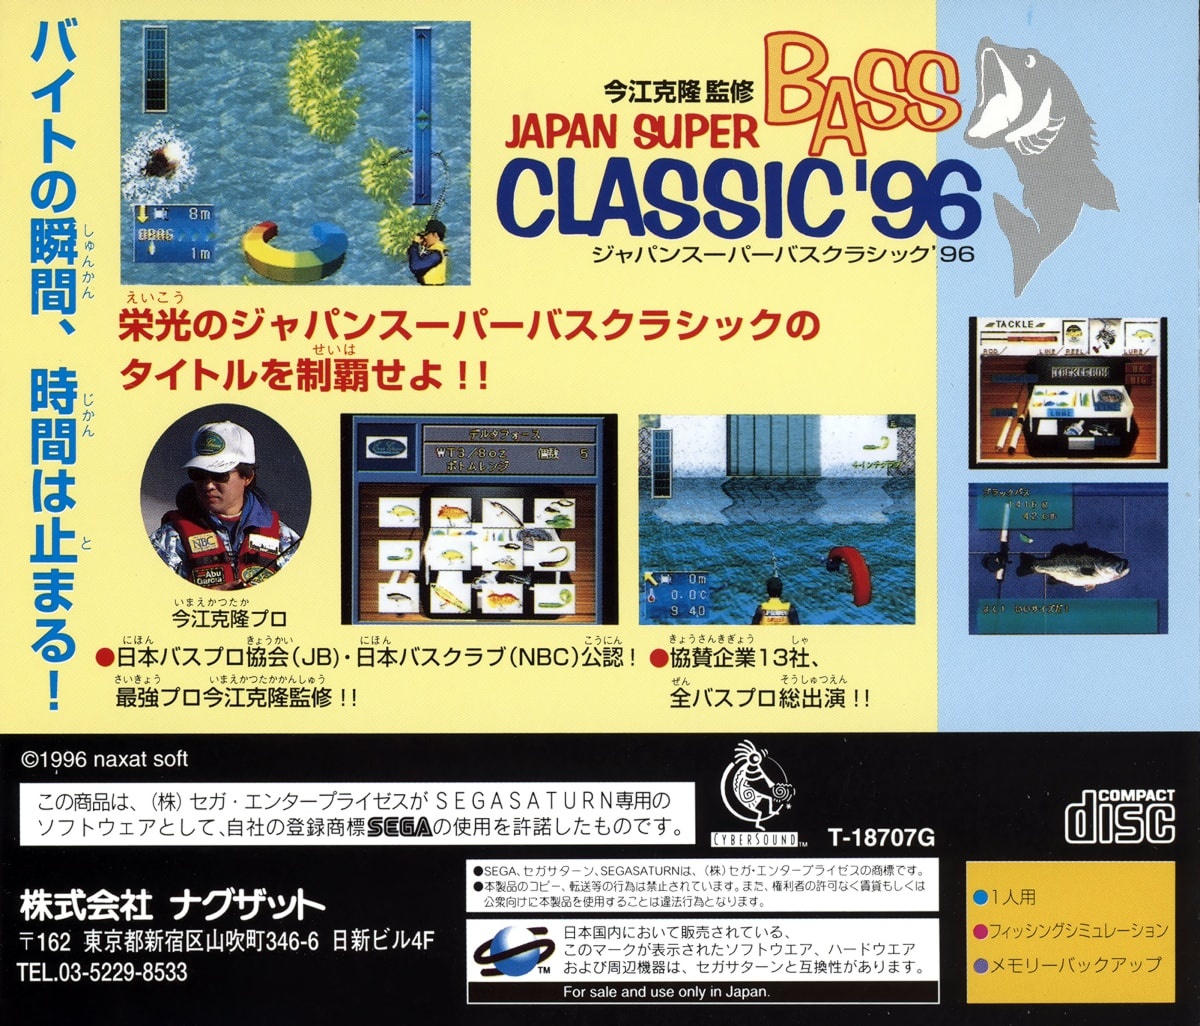 Capa do jogo Japan Super Bass Classic 96